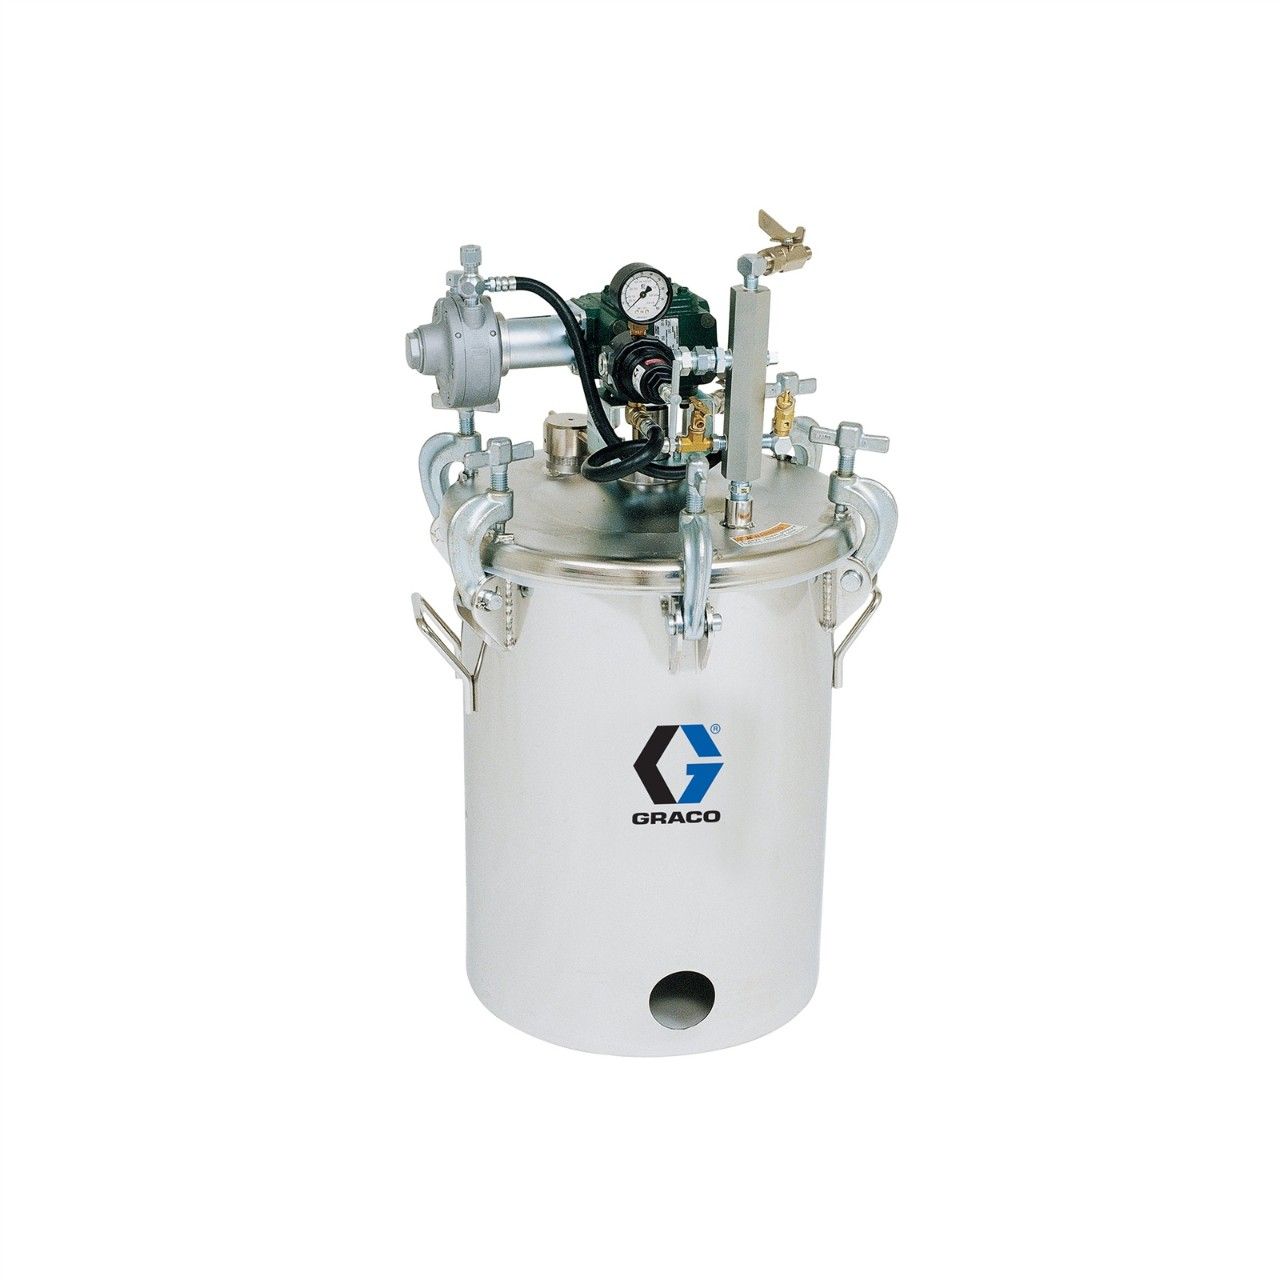 GRACO 5-Gallonen-Druckbehälter (HVLP), Behälter mit Rührwerk - 236152